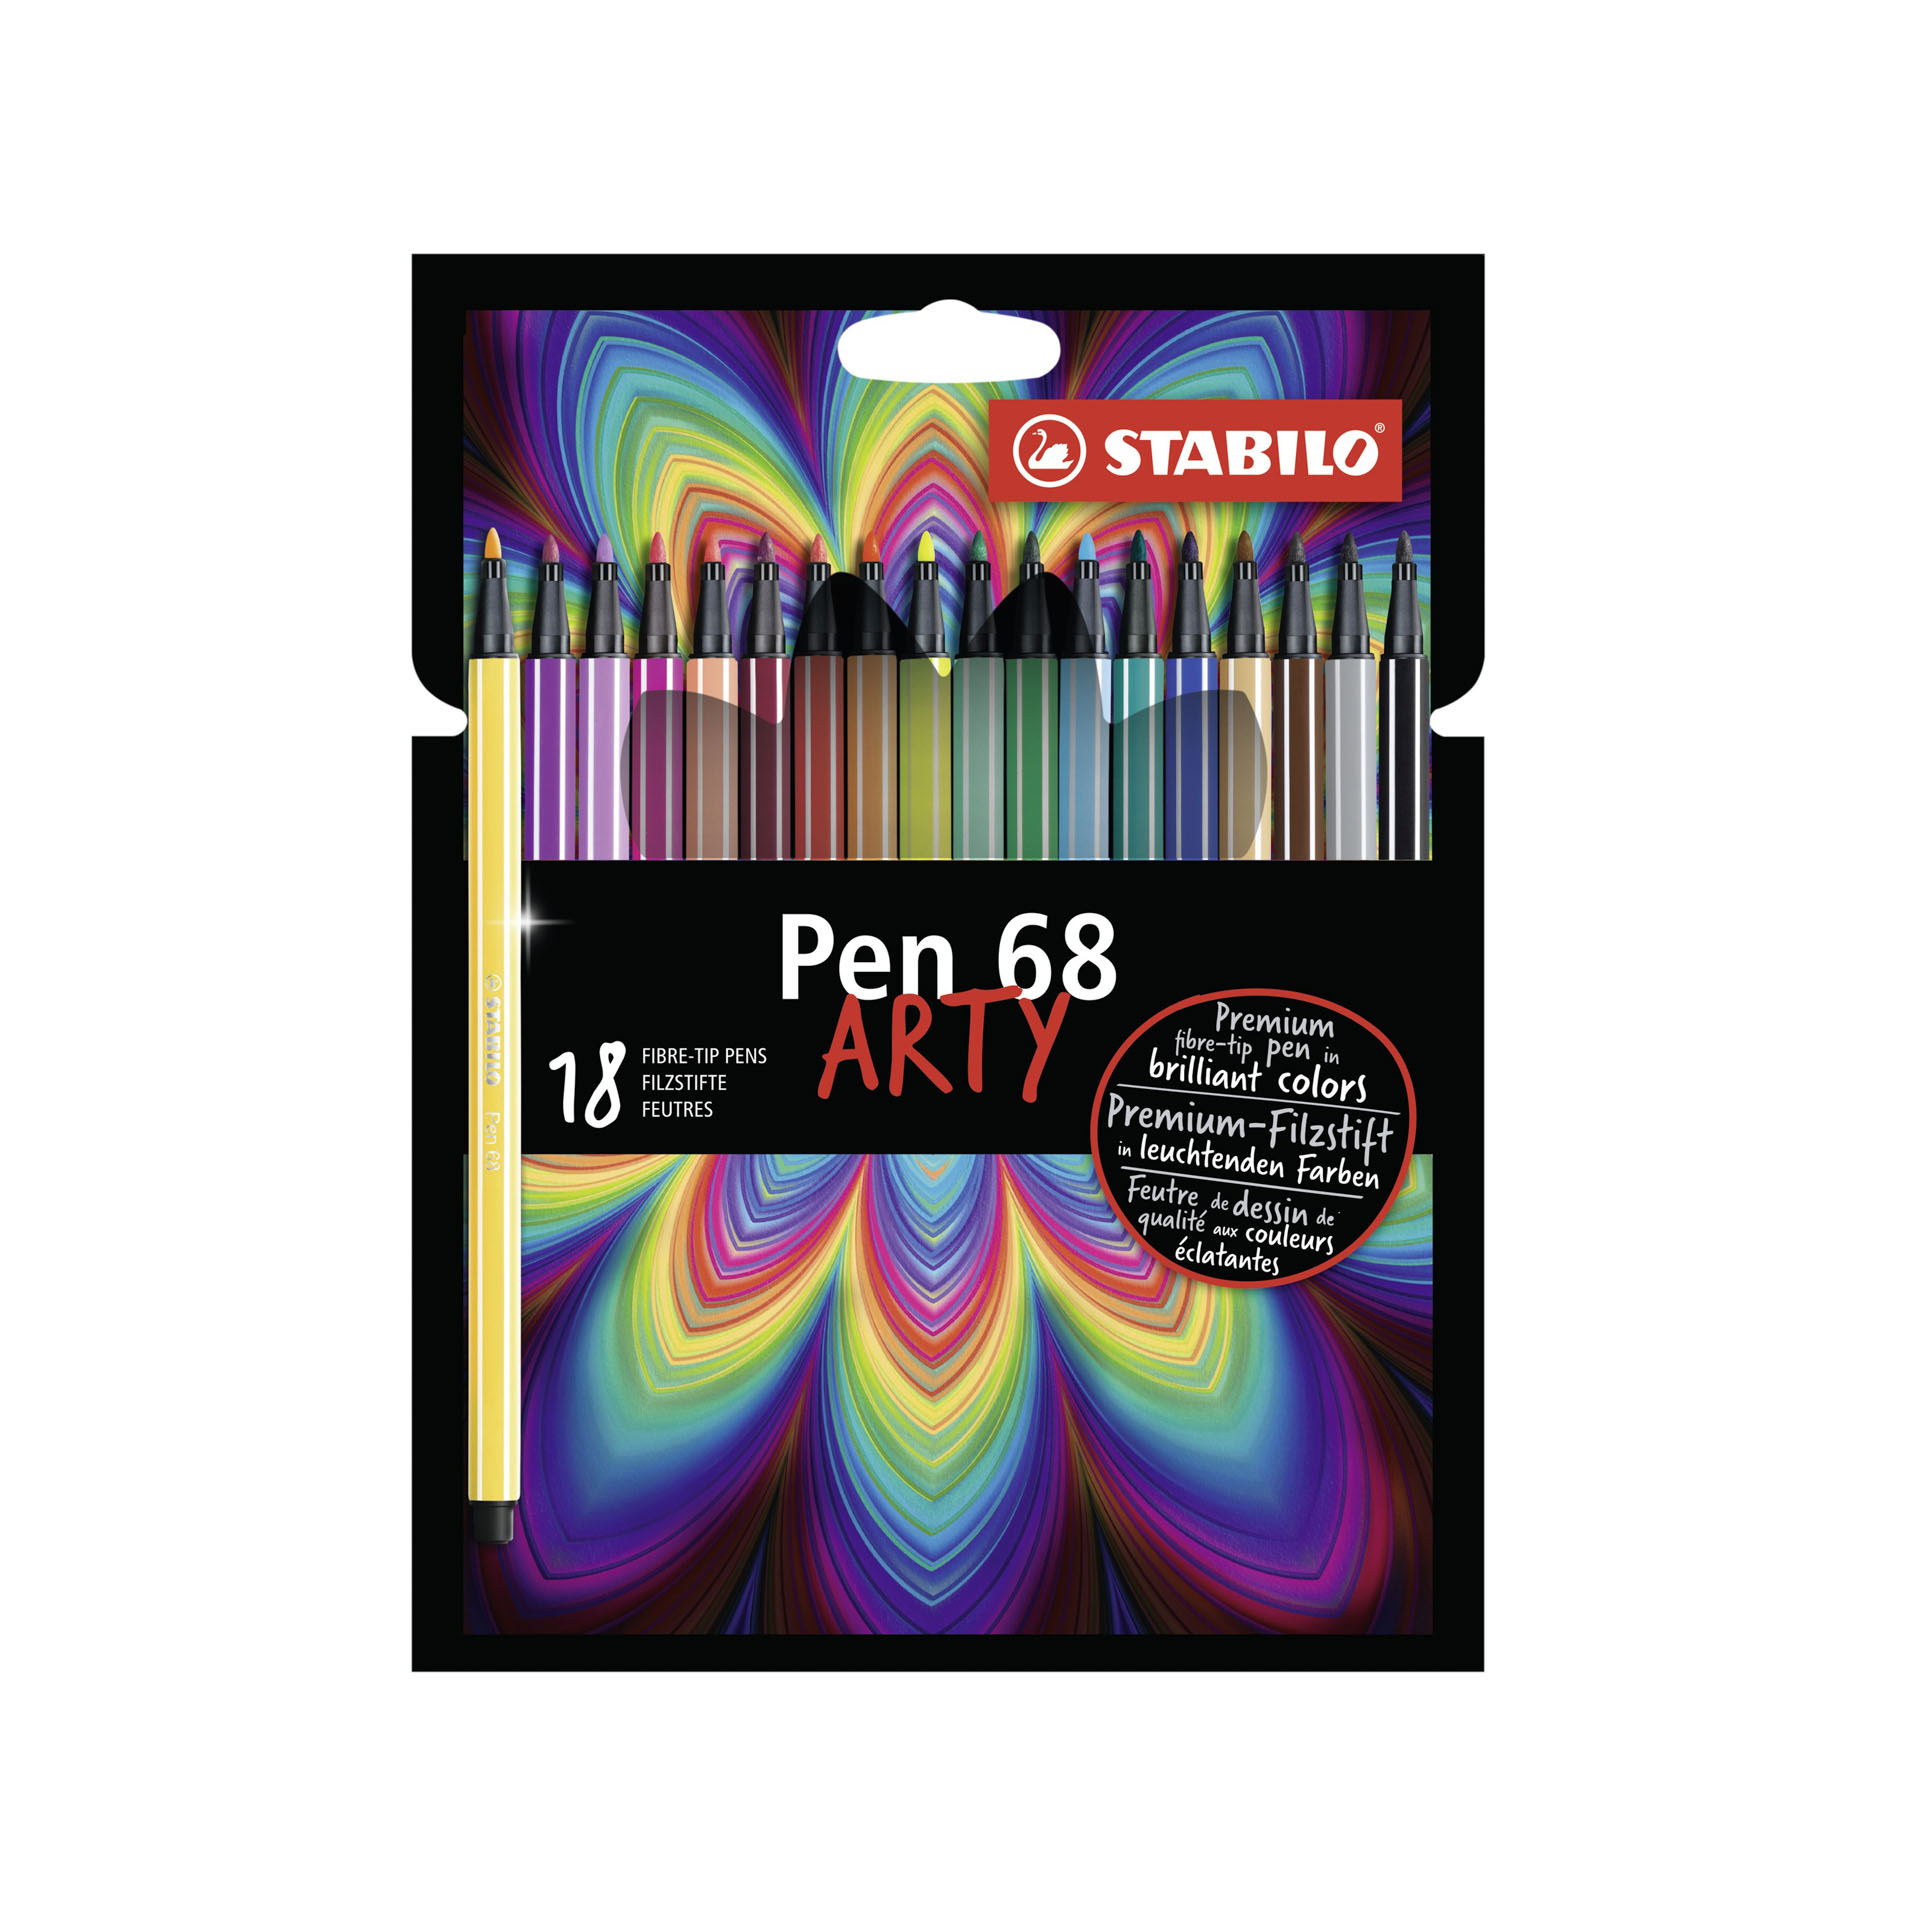 STABILO Pen 68 - ARTY - Astuccio da 18 con appendino - 18 colori assortiti, , large